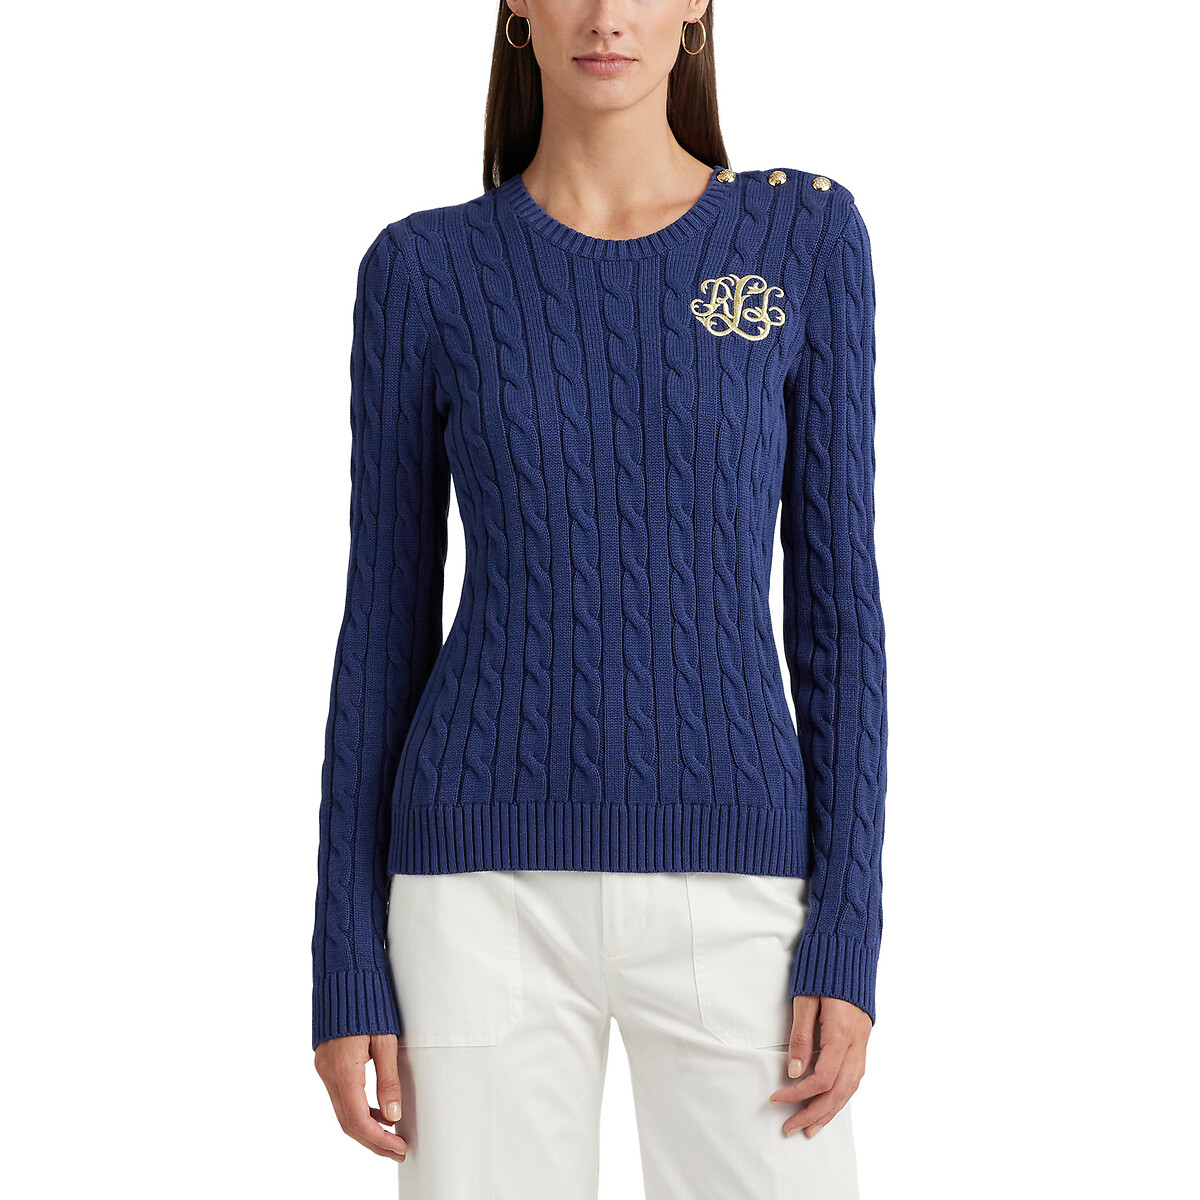 Пуловер с круглым вырезом из витого трикотажа MONTIVA XS синий пуловер с высоким воротником из трикотажа с витым узором